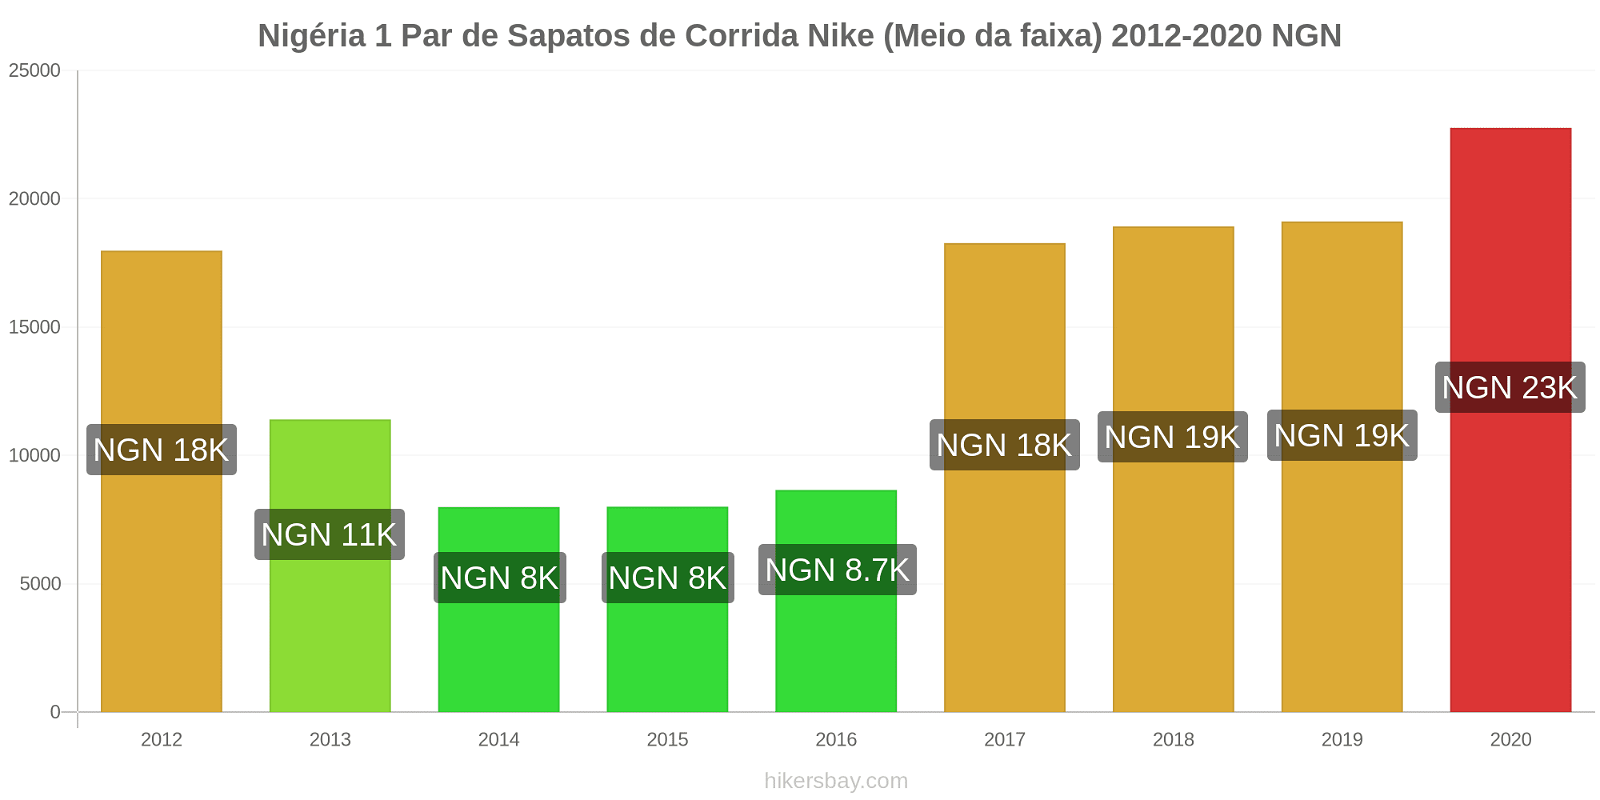 Nigéria variação de preço 1 par de tênis Nike (mid-range) hikersbay.com